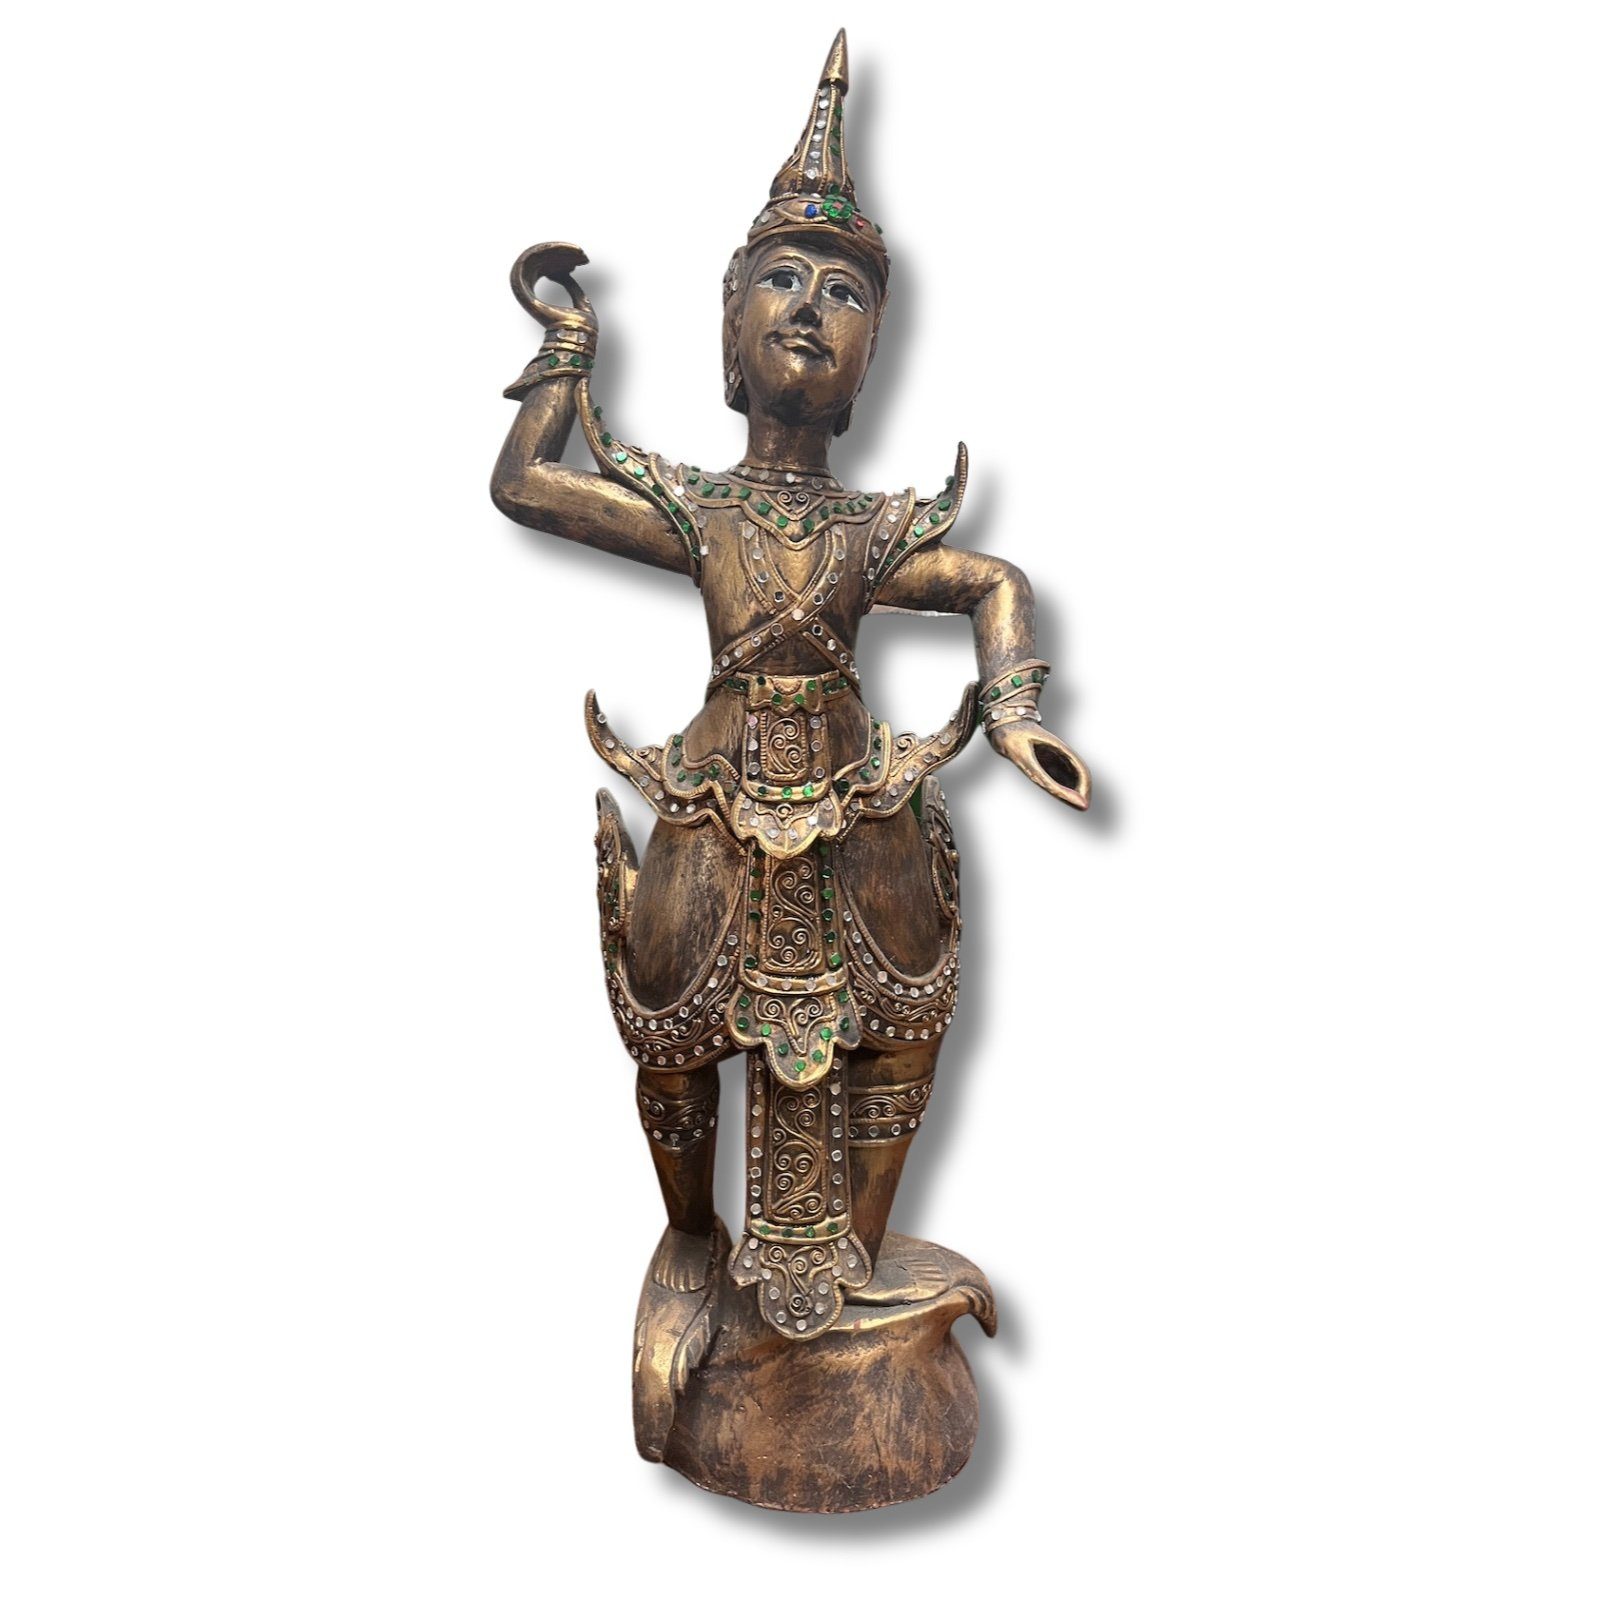 Holz Asien 63cm LifeStyle Thailändischer Buddhafigur Skulptur Tempeltänzer